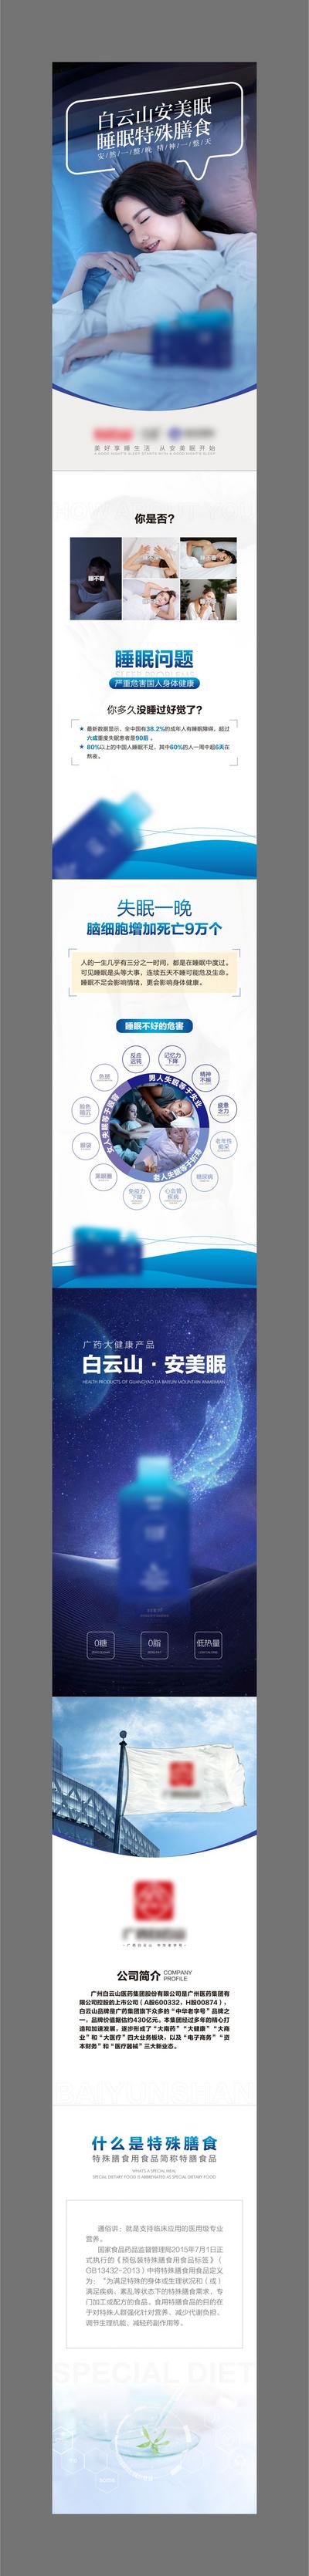 南门网 专题设计 H5 微商 睡眠 宣传